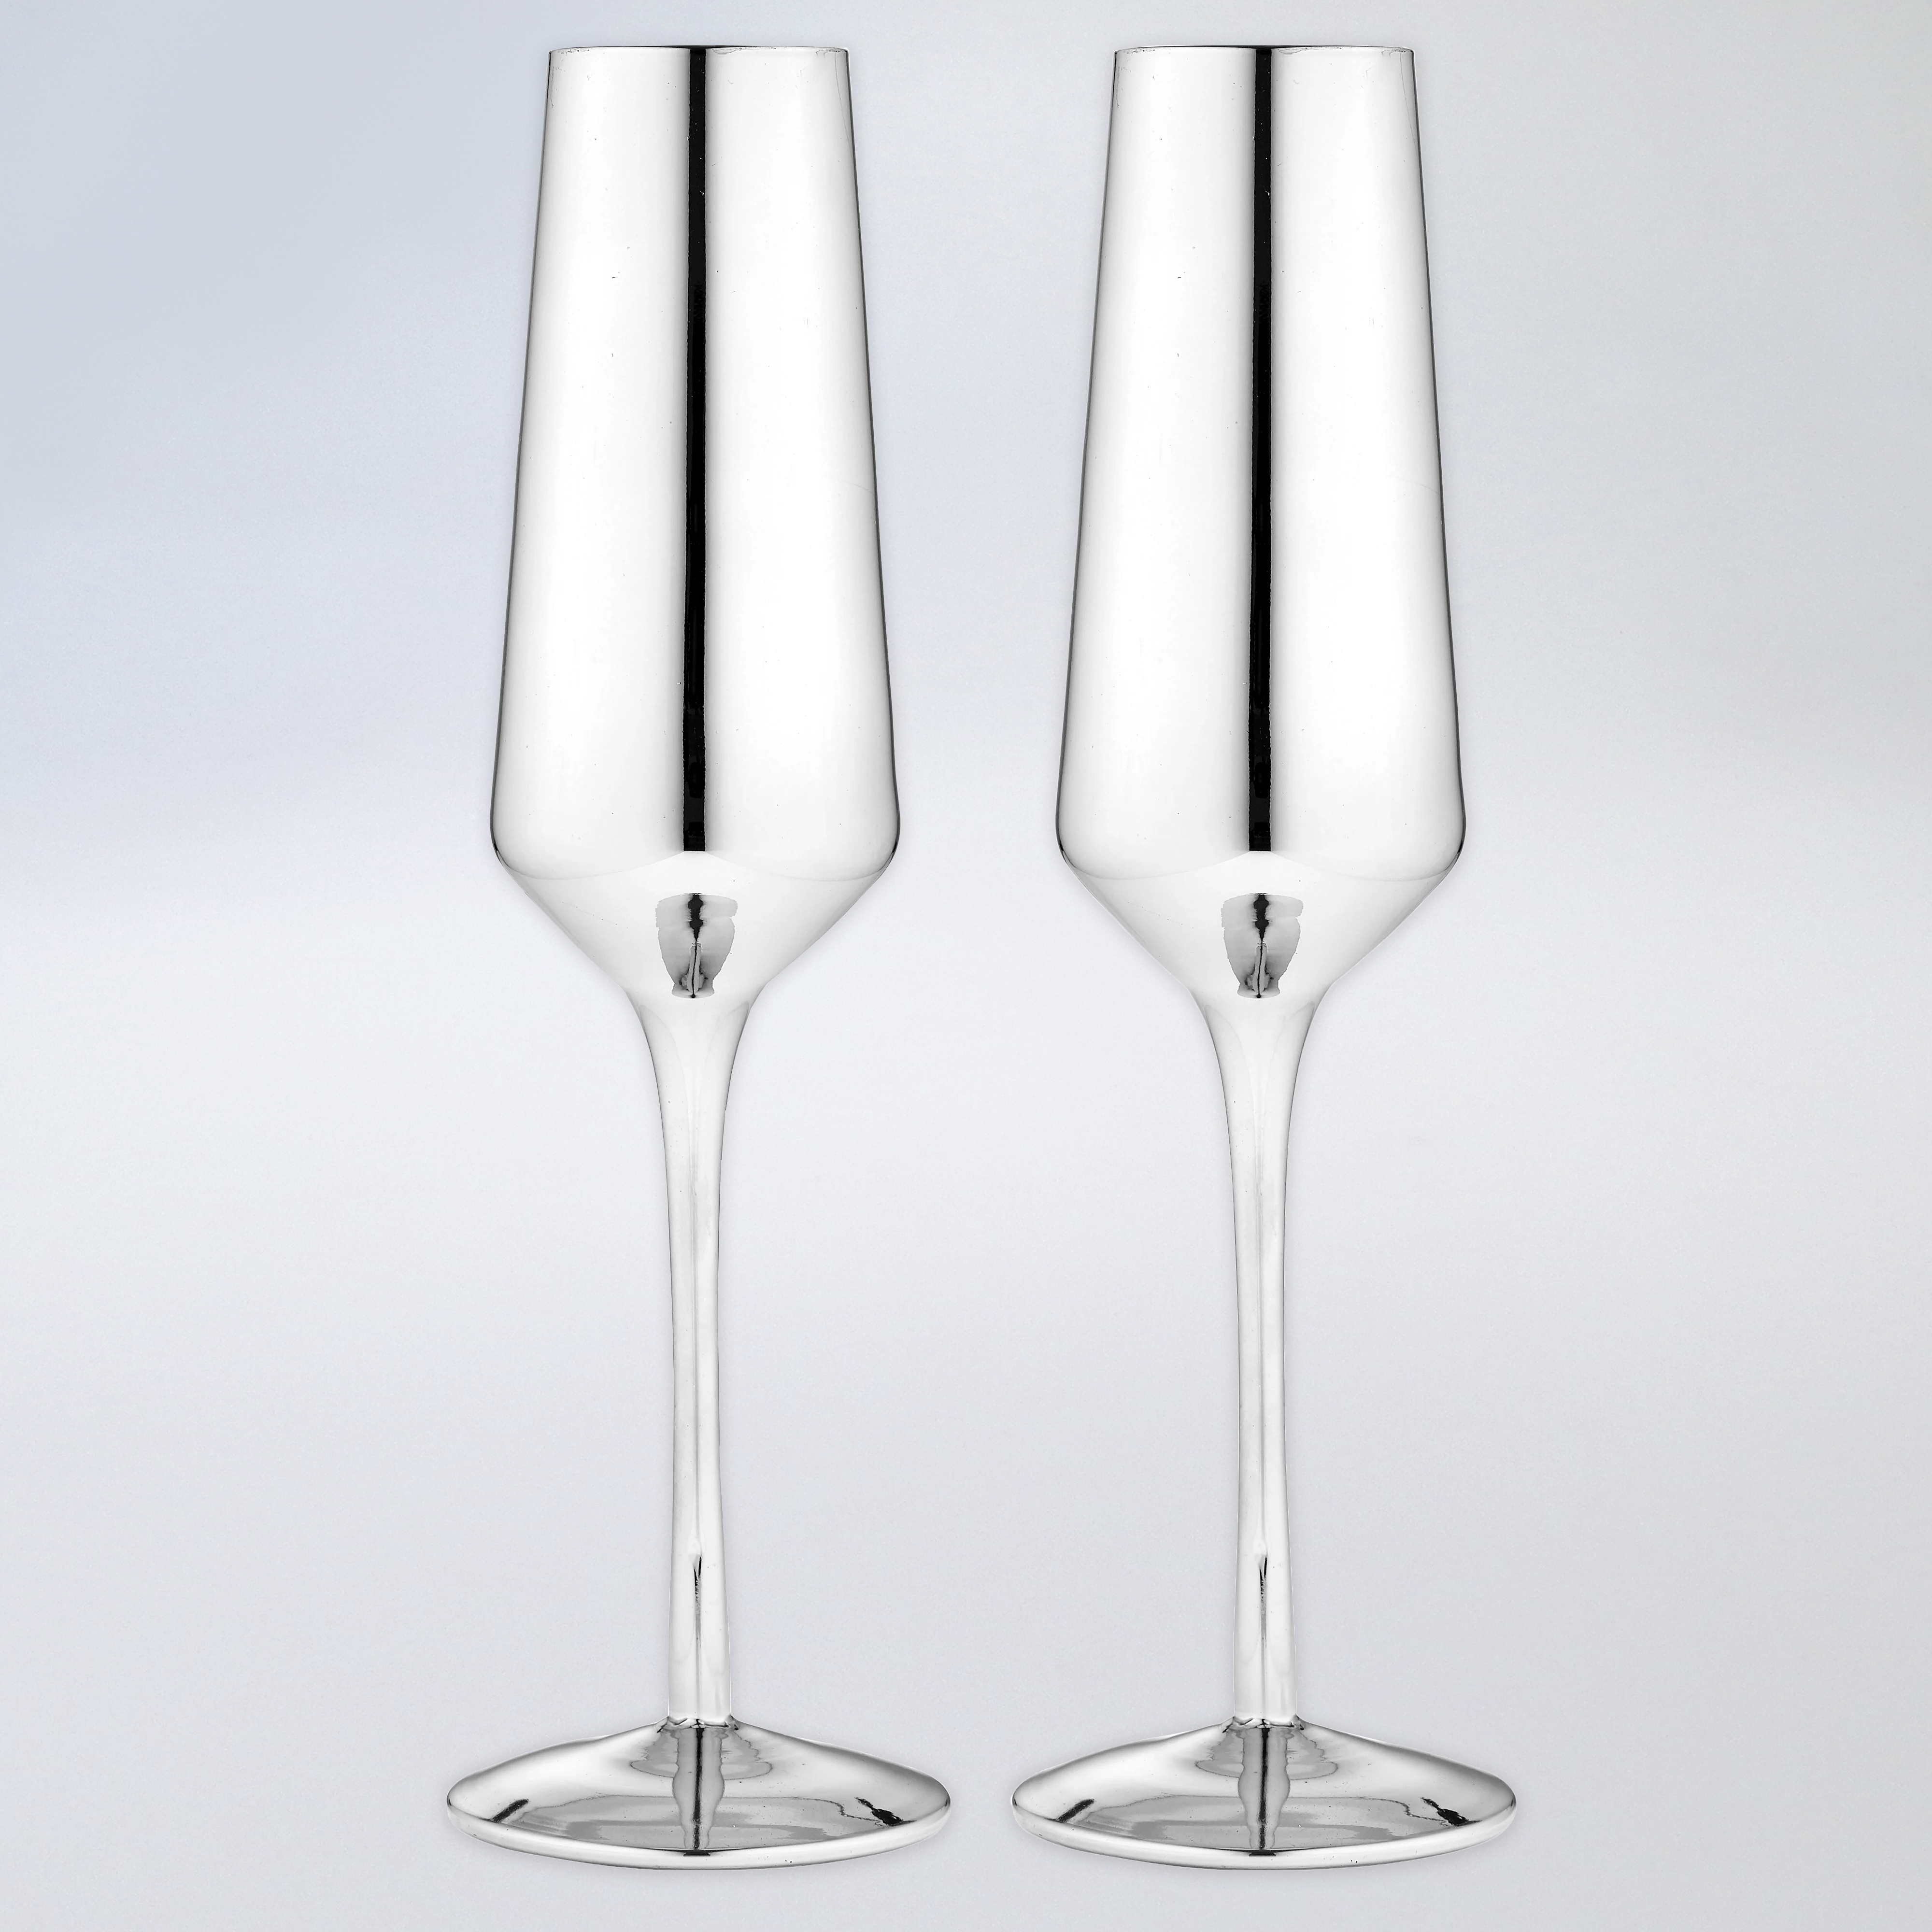 Tempa Aurora Champagne Glasses - Silver